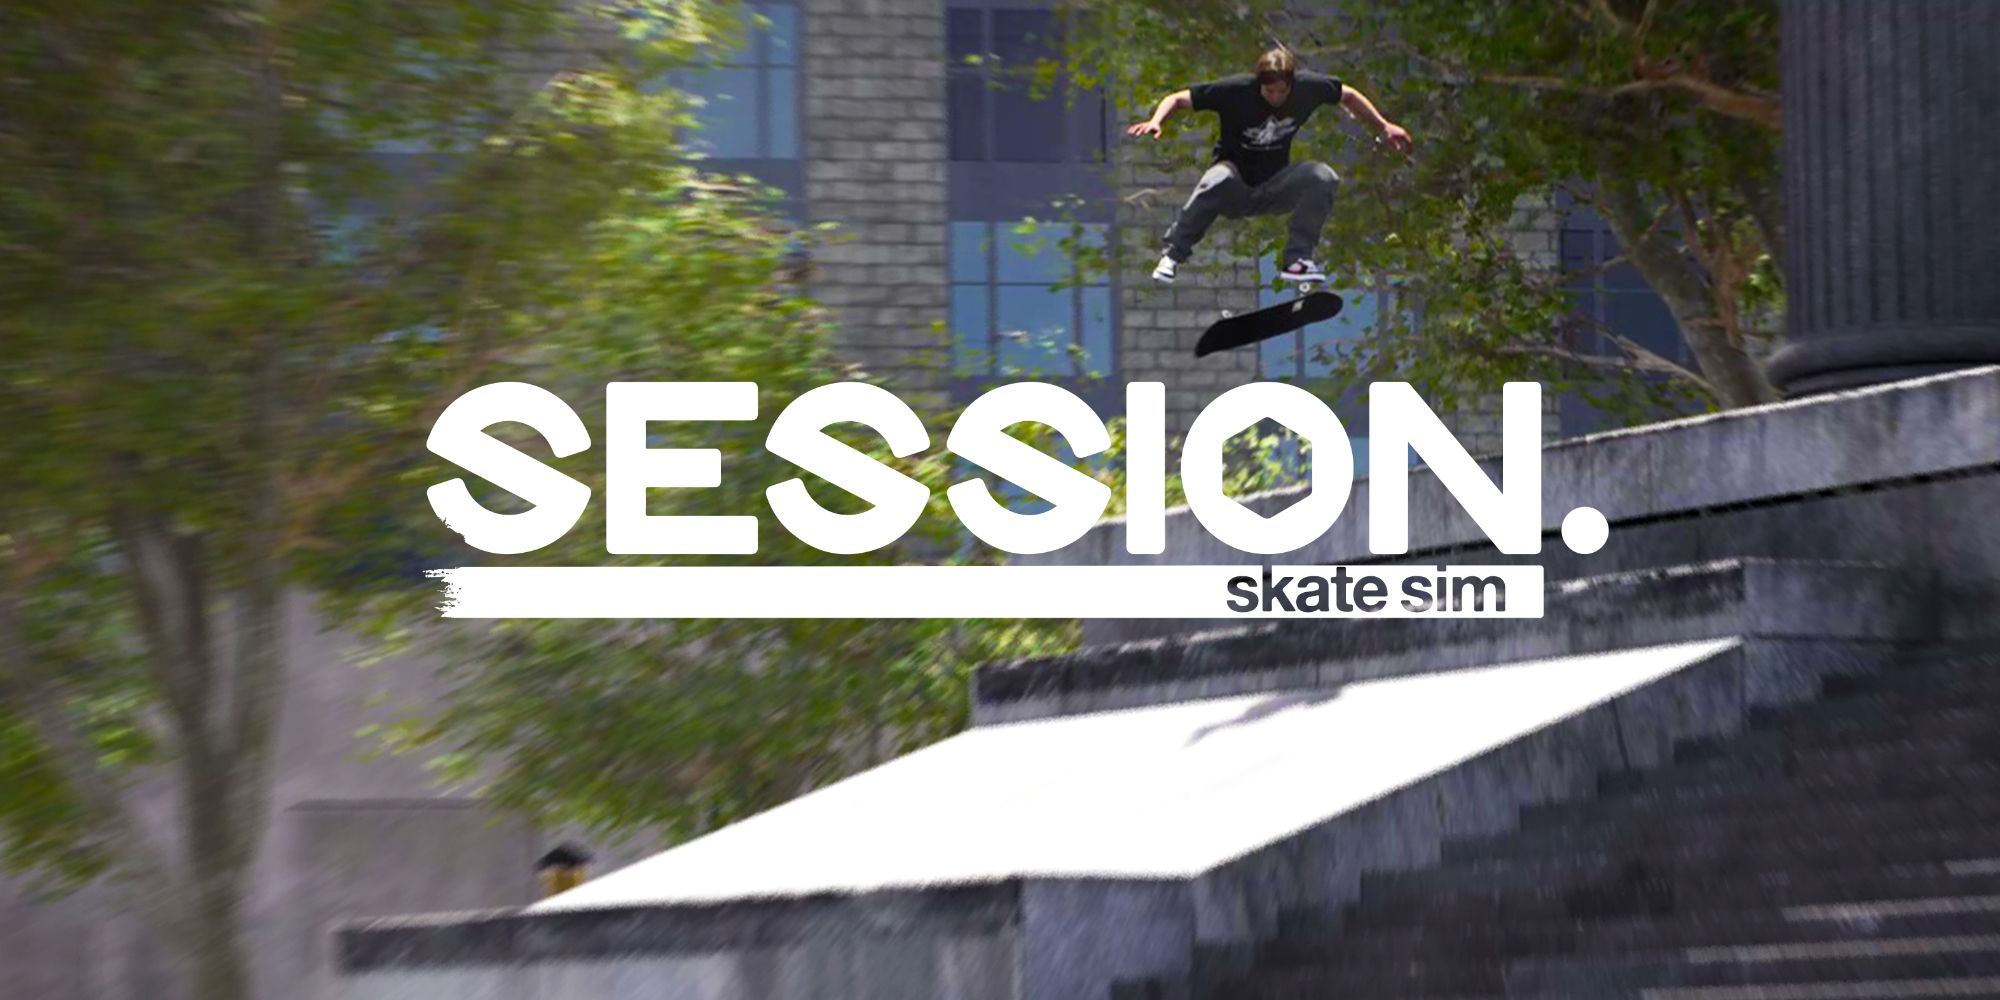 Session Skate Sim Review skatista pulando sobre o título e descendo escadas